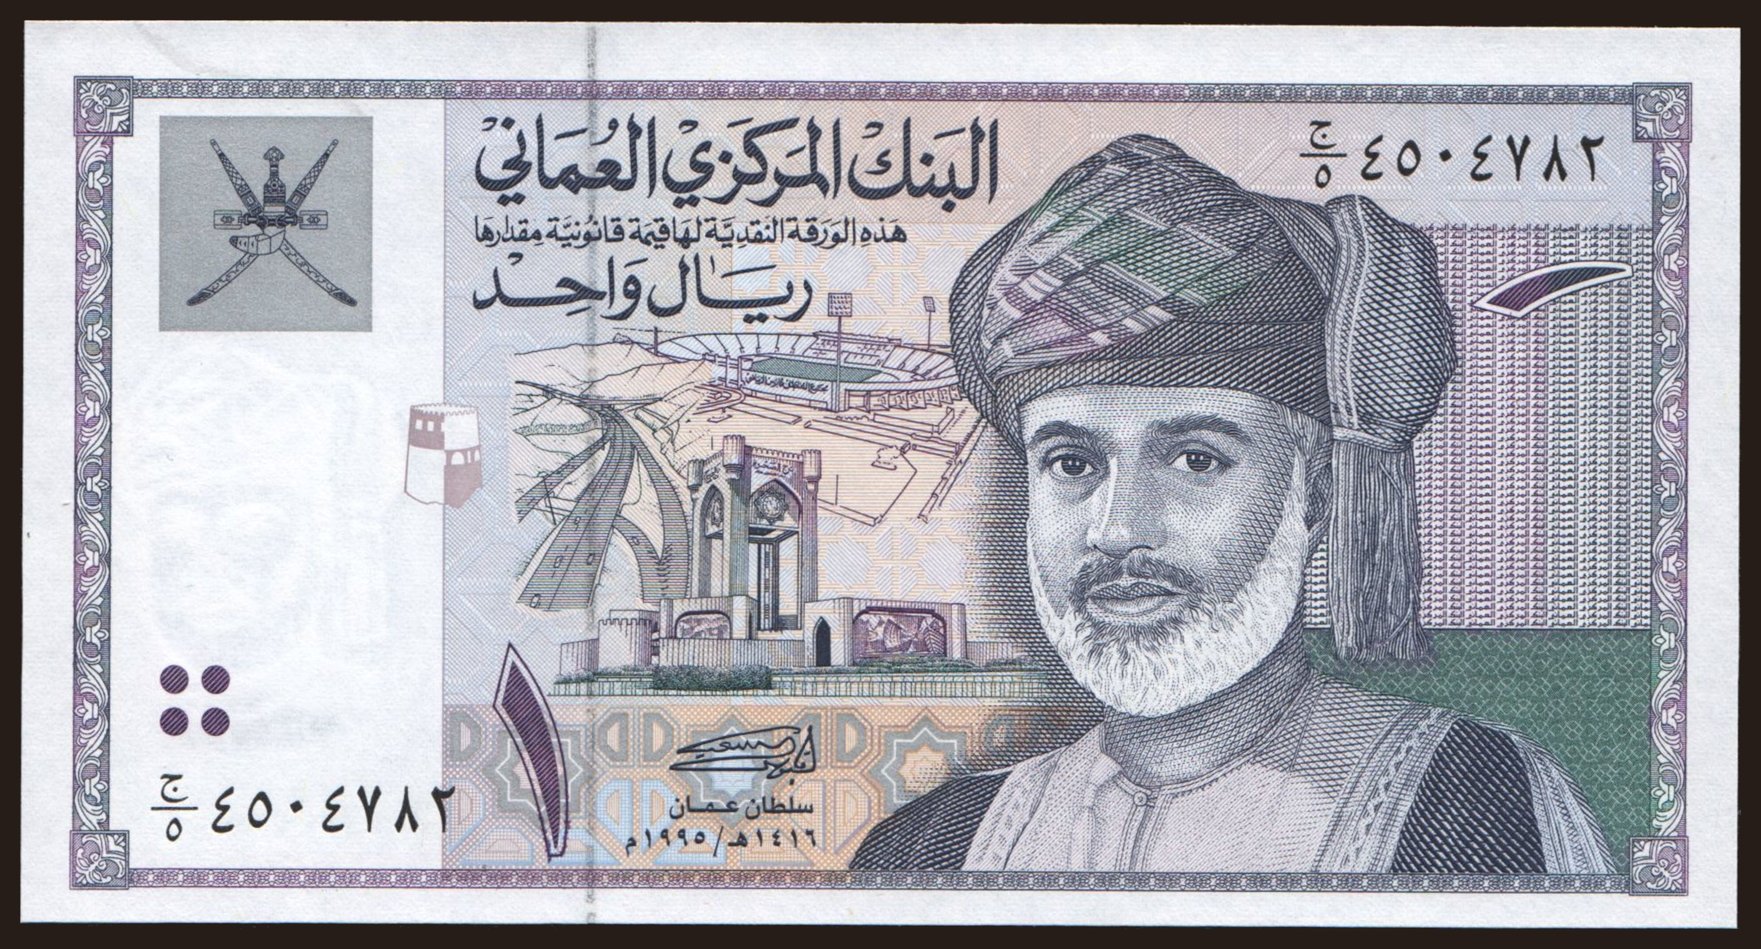 1 rial, 1995